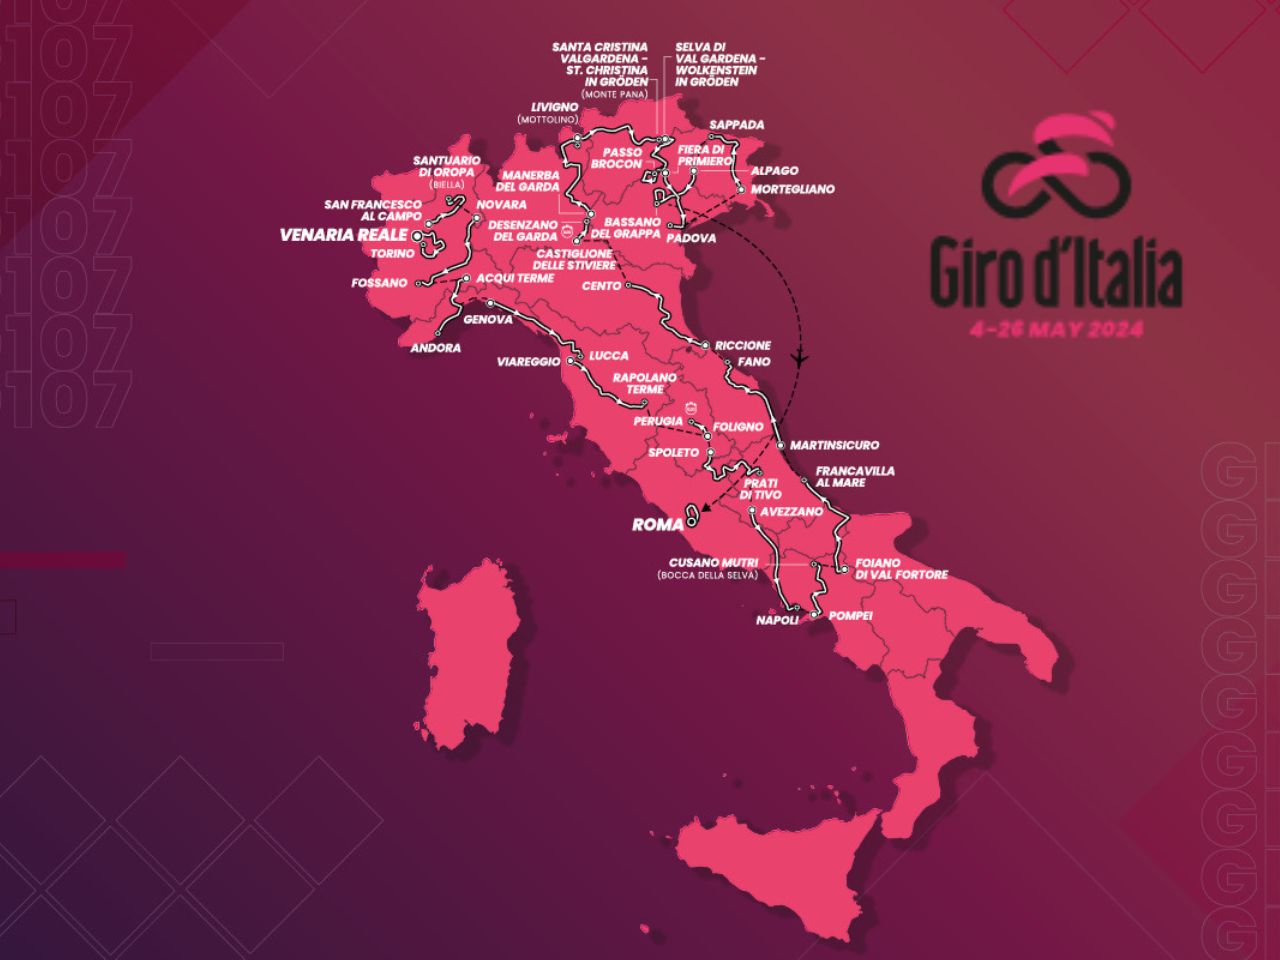 Il Giro d’Italia cambia “giro”, salta il passaggio a Santa Maria Nuova